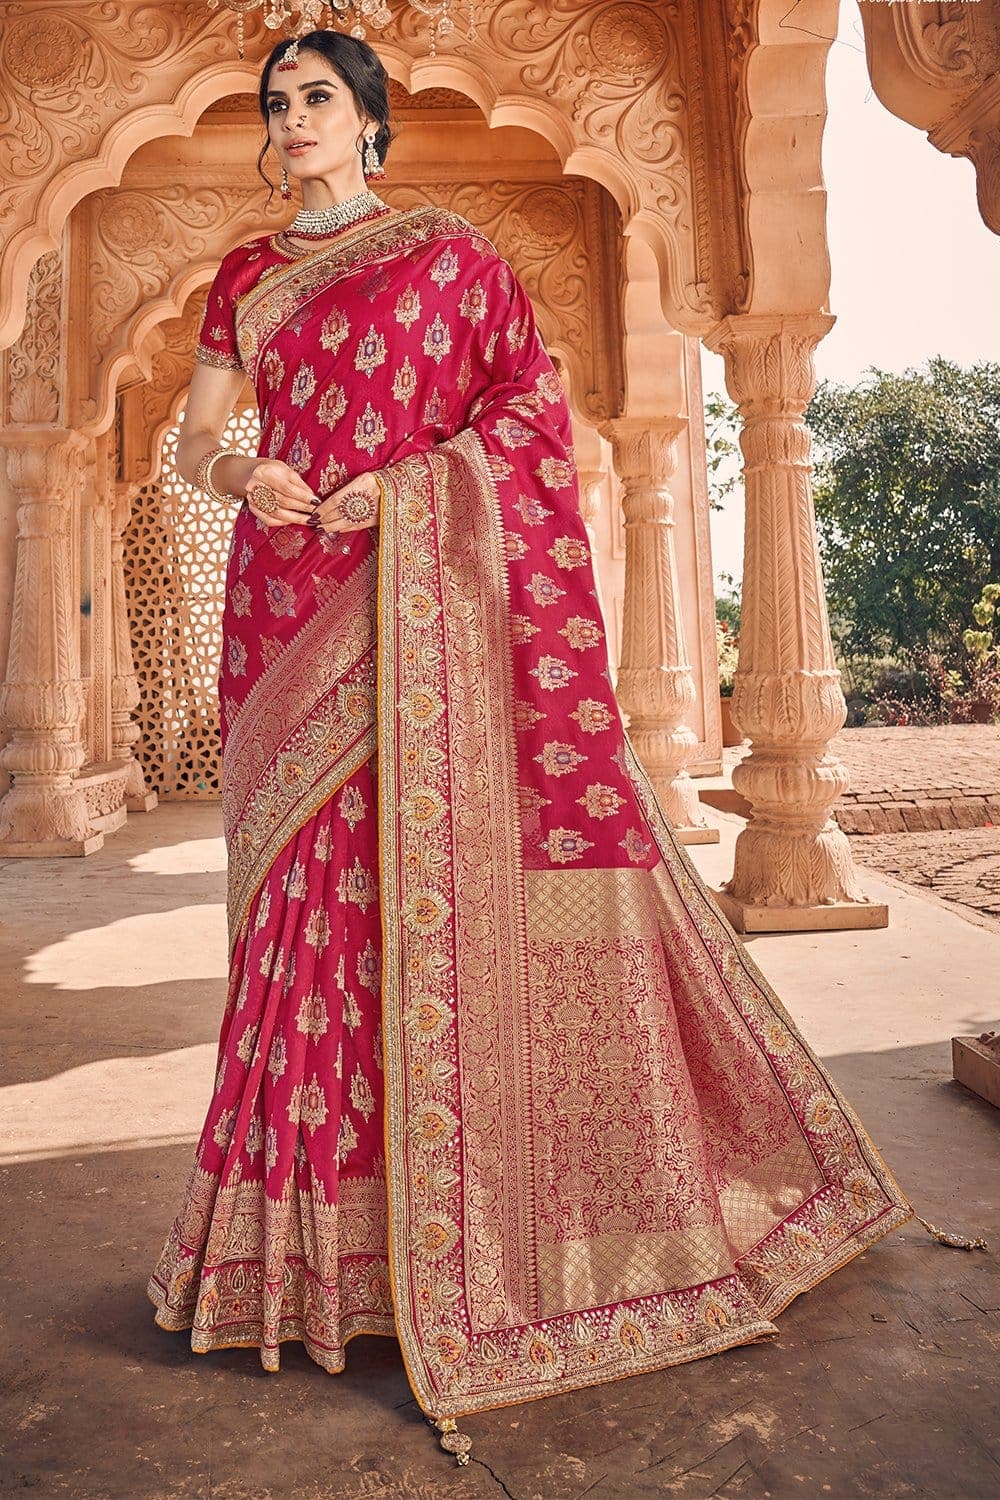 Rani Pink Banarasi Silk Saree with Blouse GU-208 at Rs 1599 | Banarasi  Sarees in Surat | ID: 19507202655